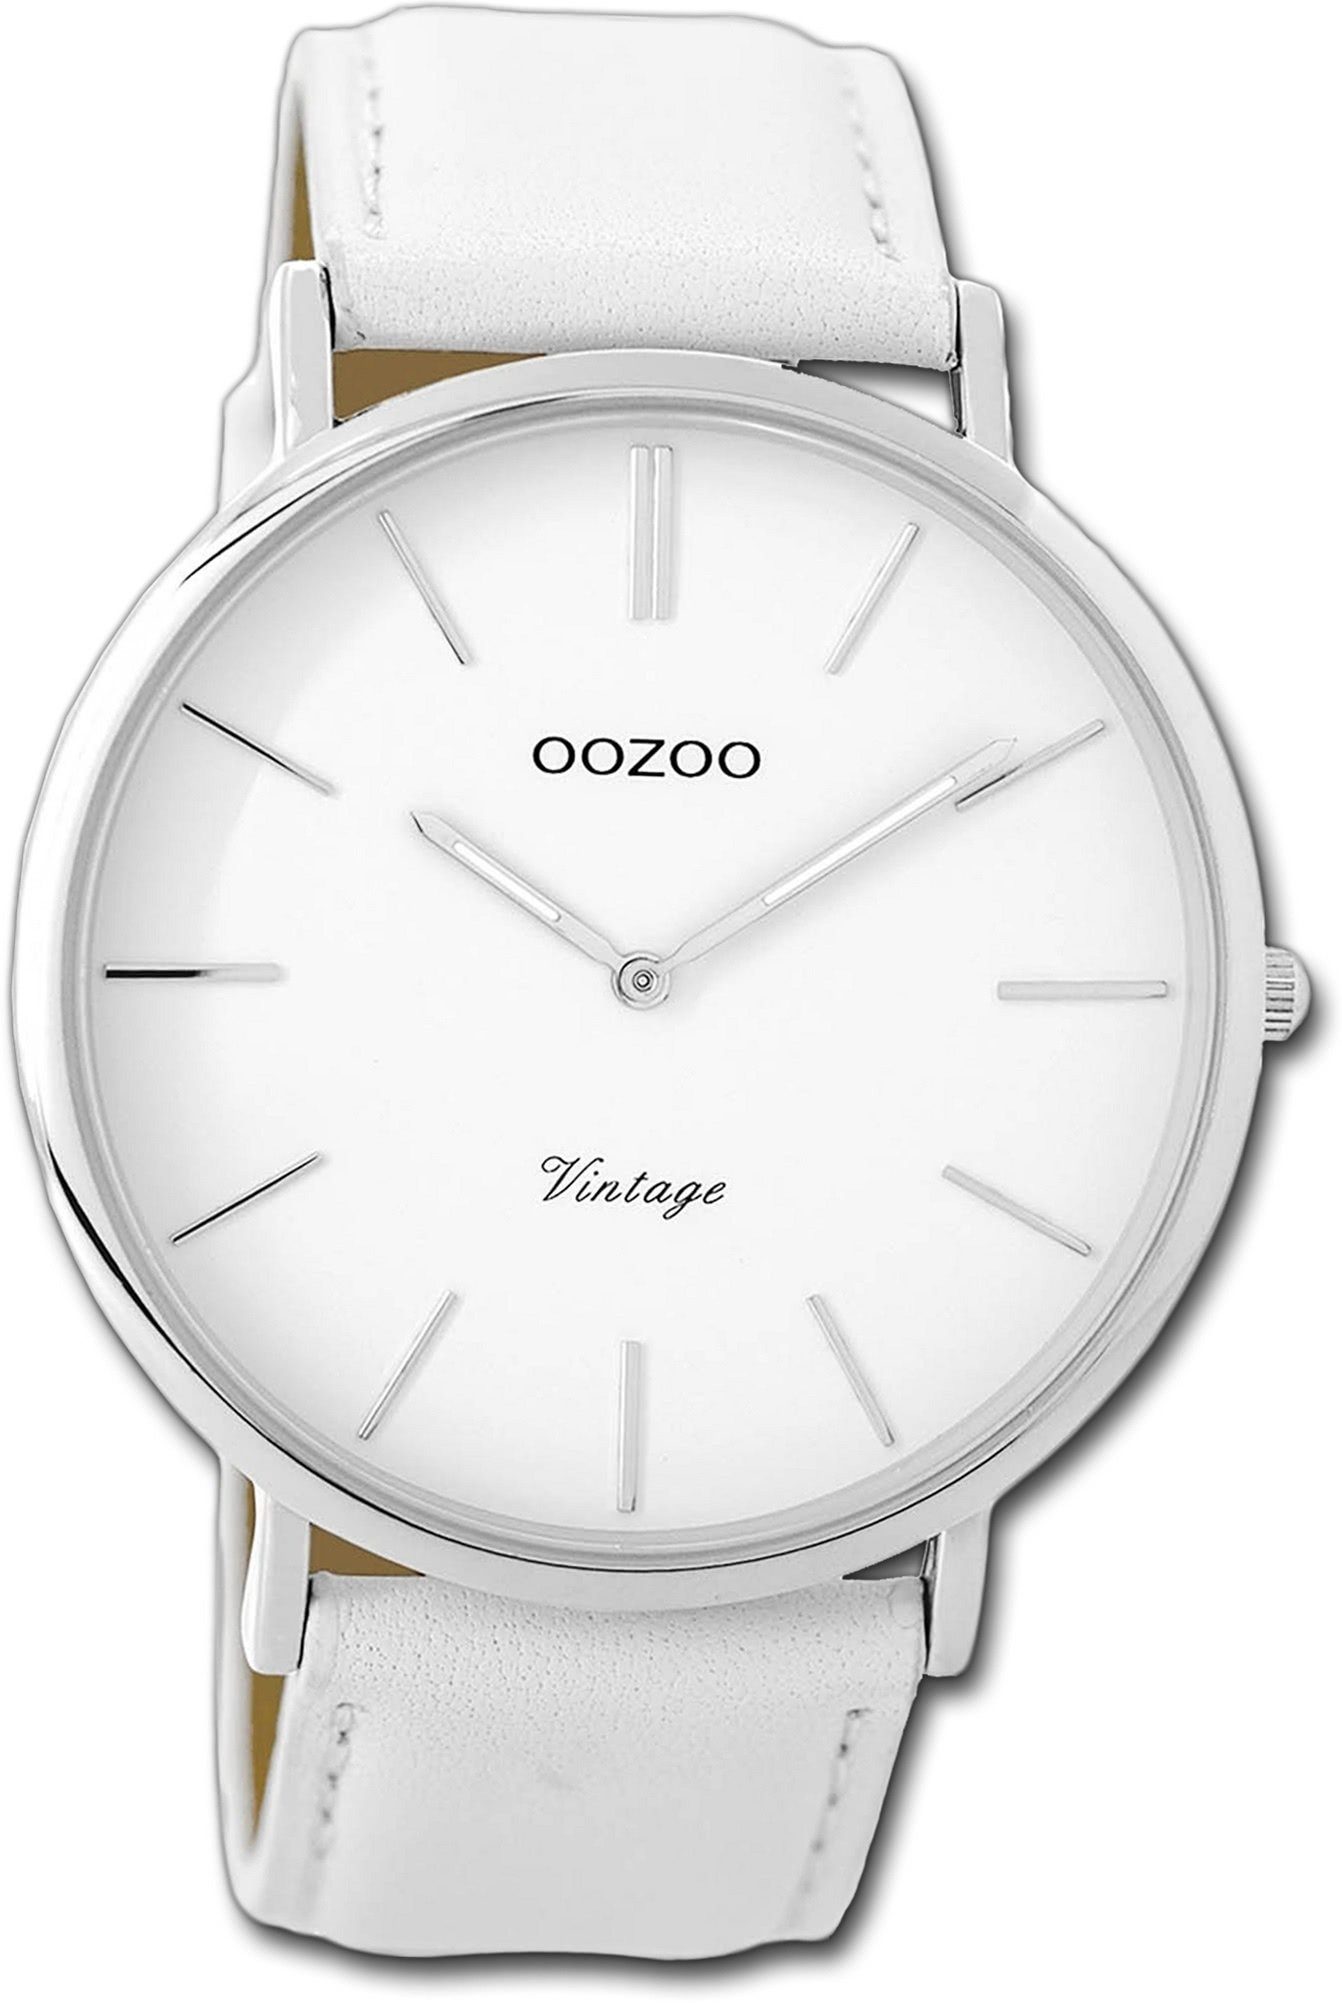 OOZOO Quarzuhr Oozoo Leder Damen Uhr C9310 Analog, Damenuhr Lederarmband weiß, rundes Gehäuse, groß (ca. 45mm)